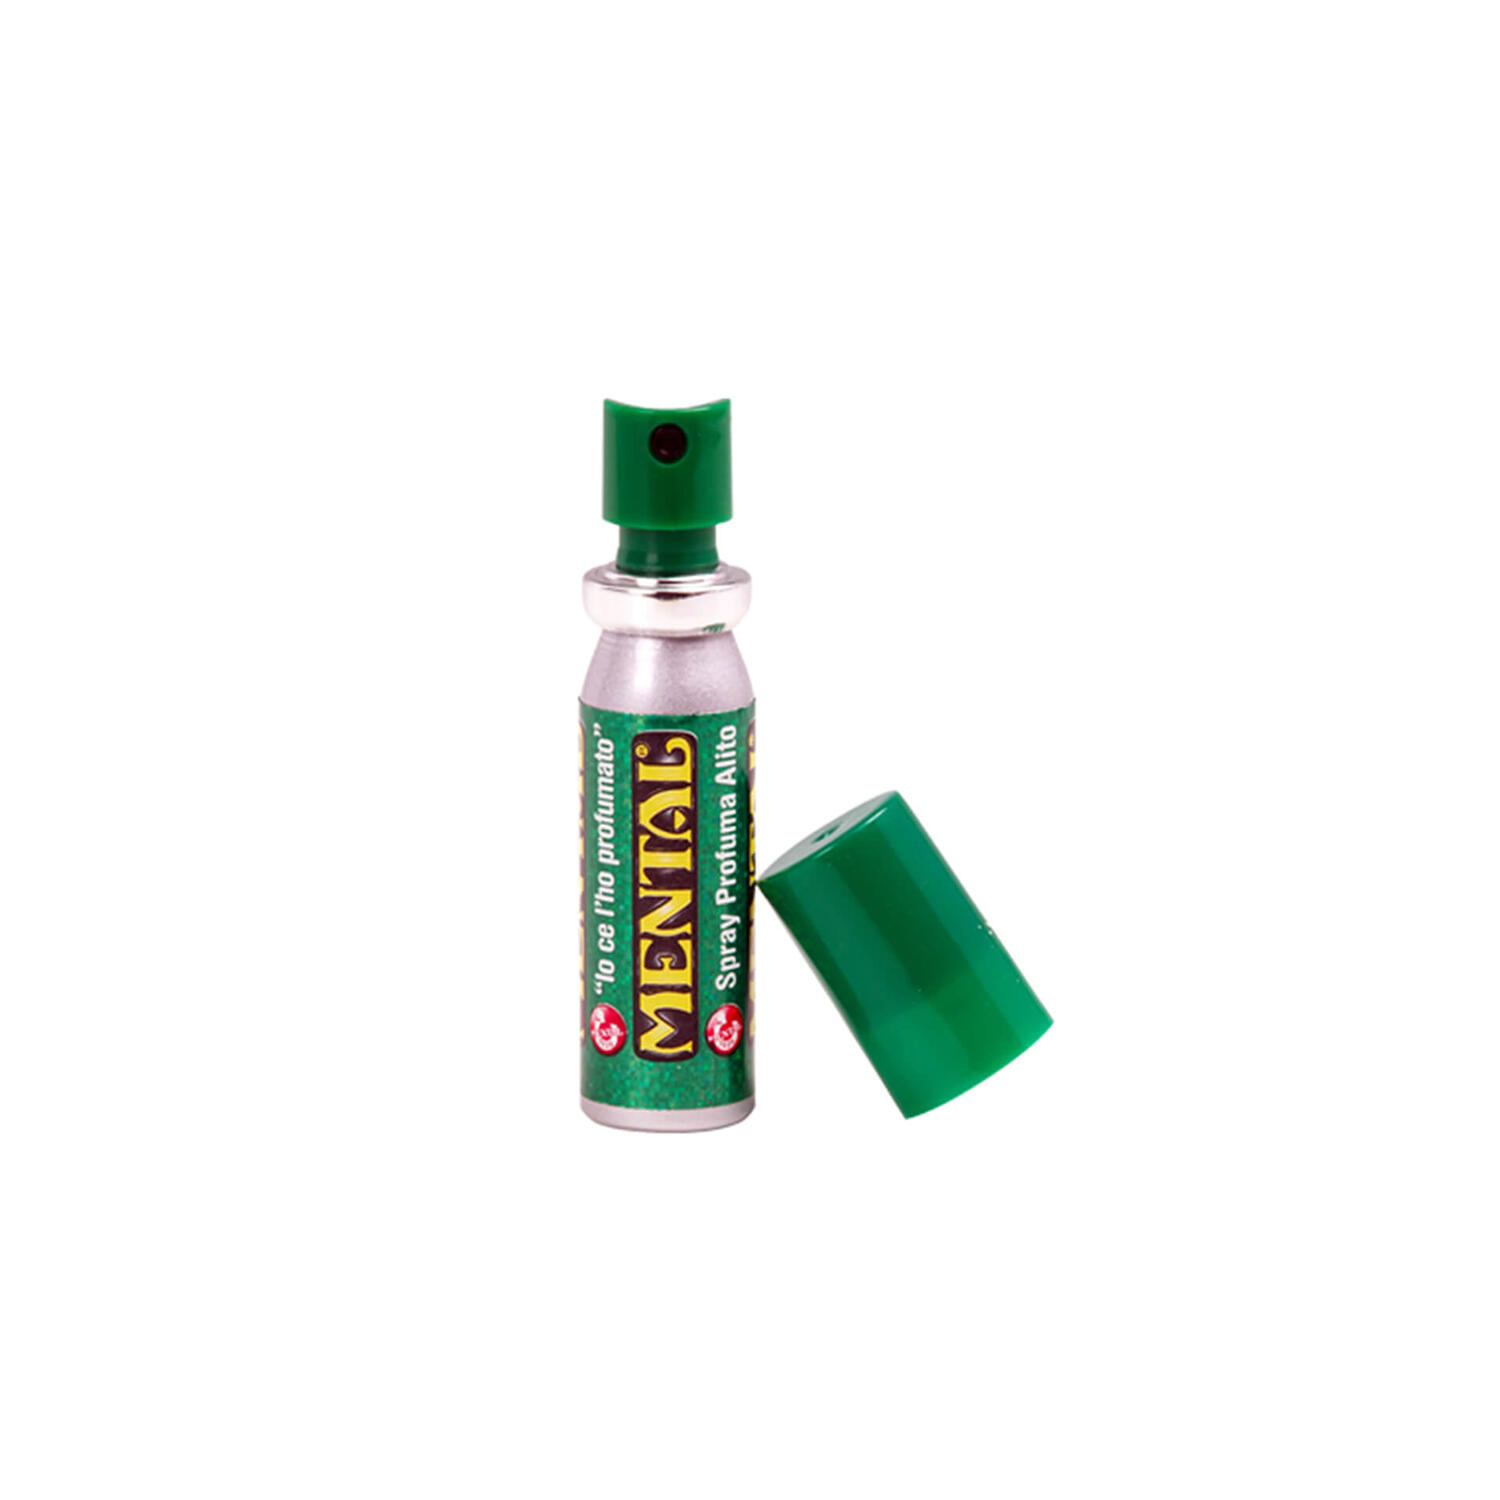 Mint Spray Mental – spray 18 ml - Multi Pack 12PCS - Spray